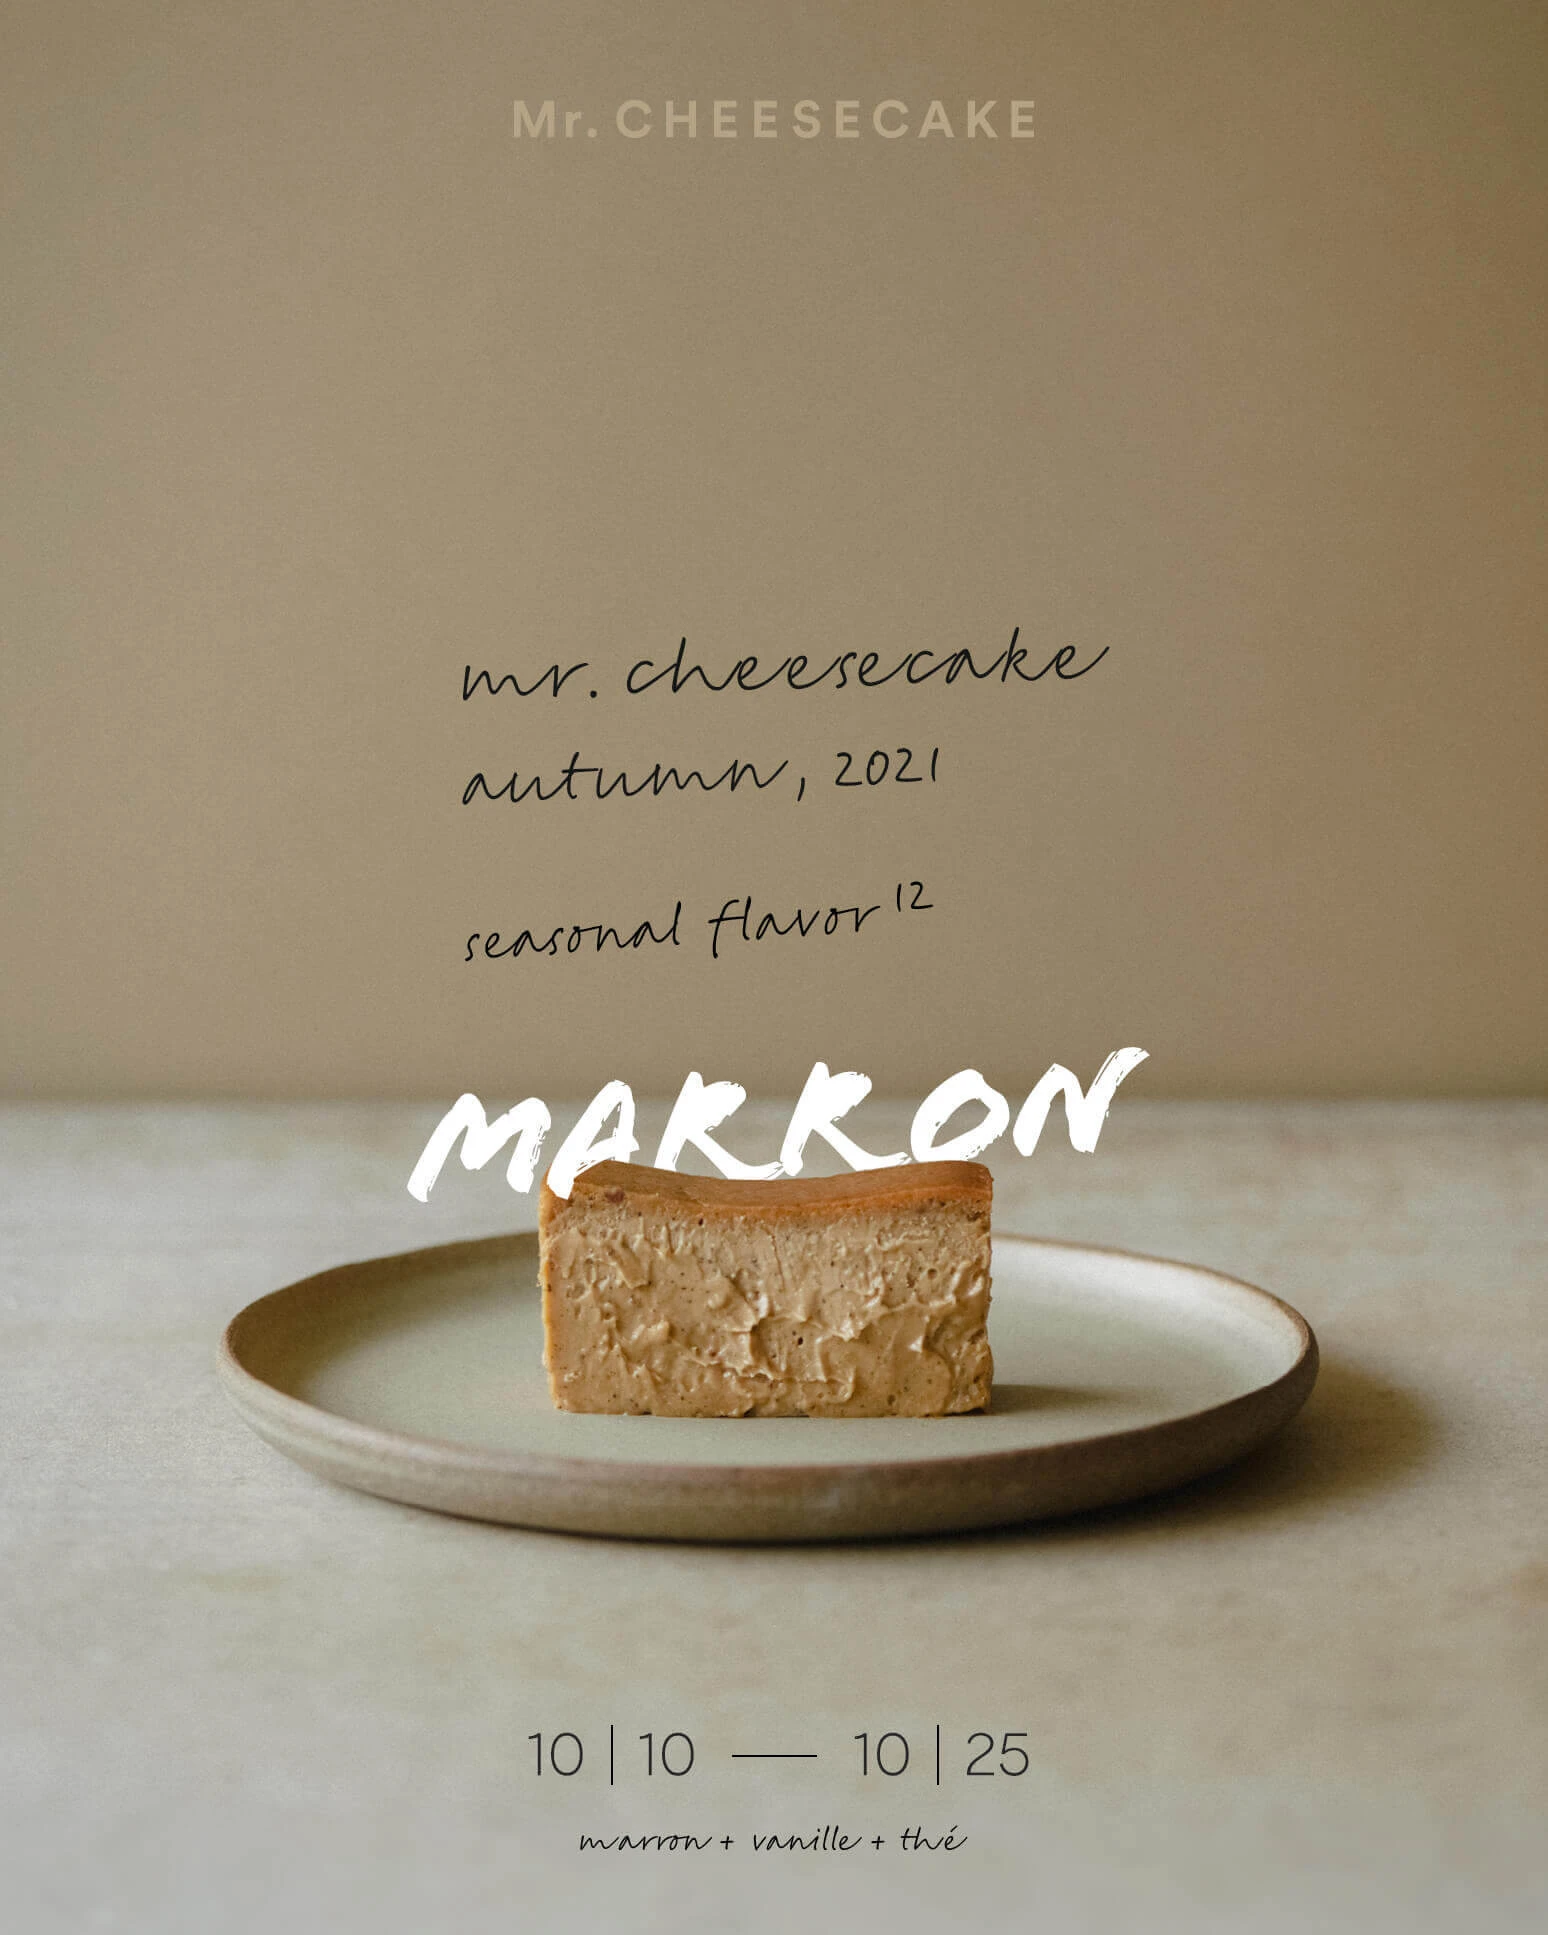 「Mr.CHEESECAKE marron（ミスターチーズケーキ マロン）」が買えるのはいつ？